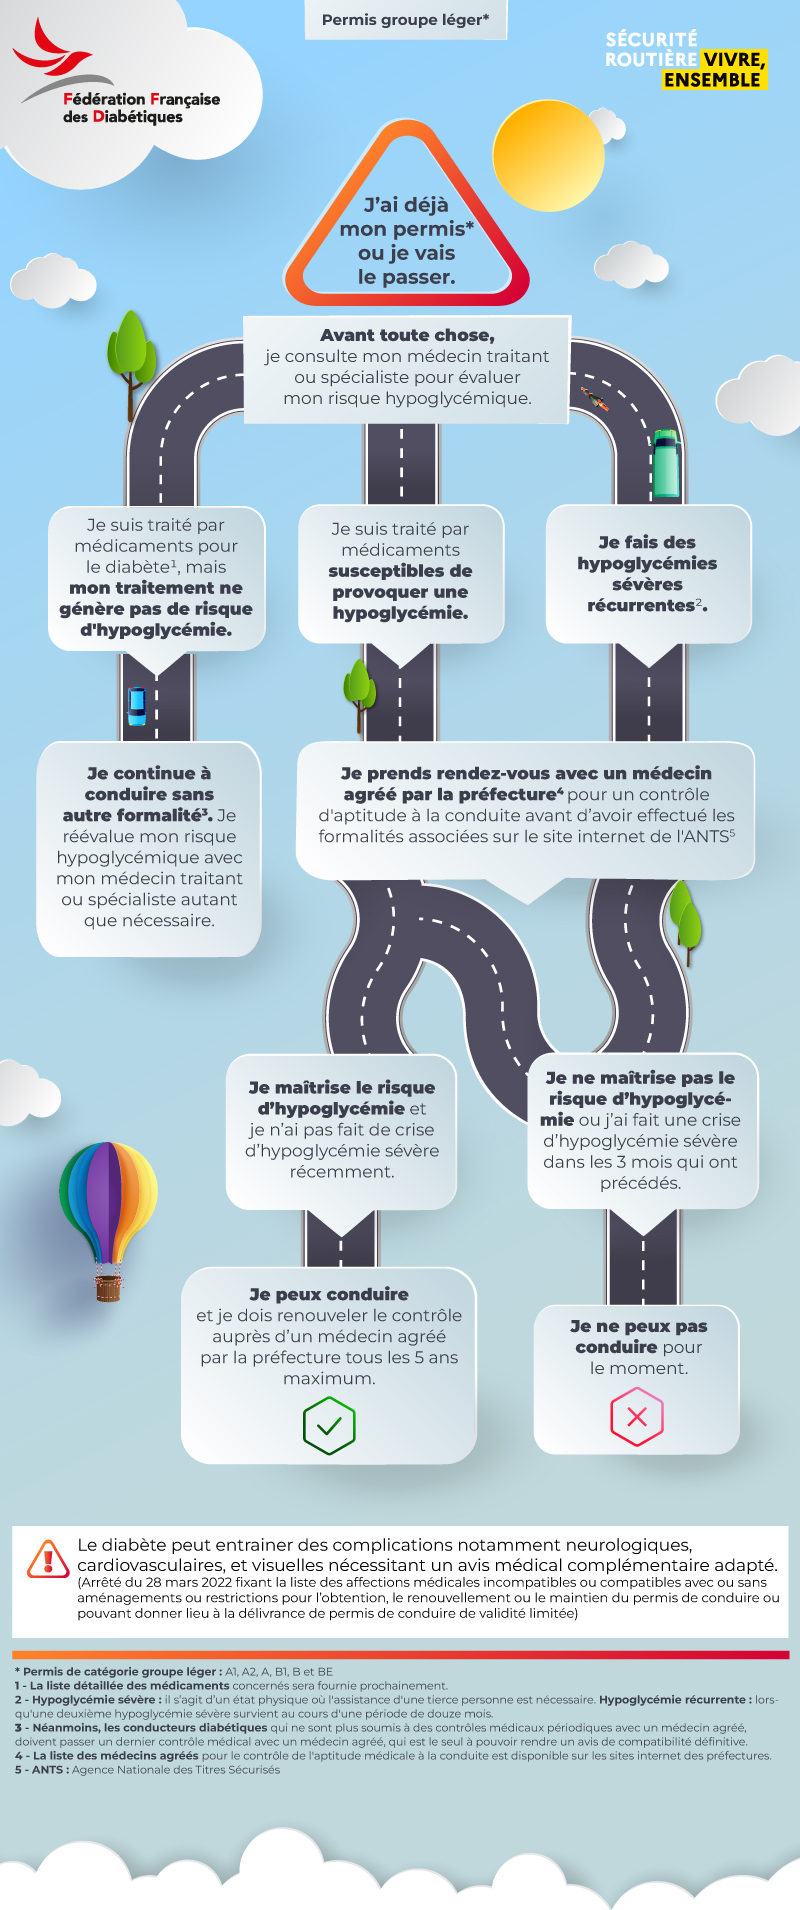  Découvrez l’infographie de la Fédération Française des Diabétiques sur le diabète et le permis de conduire 